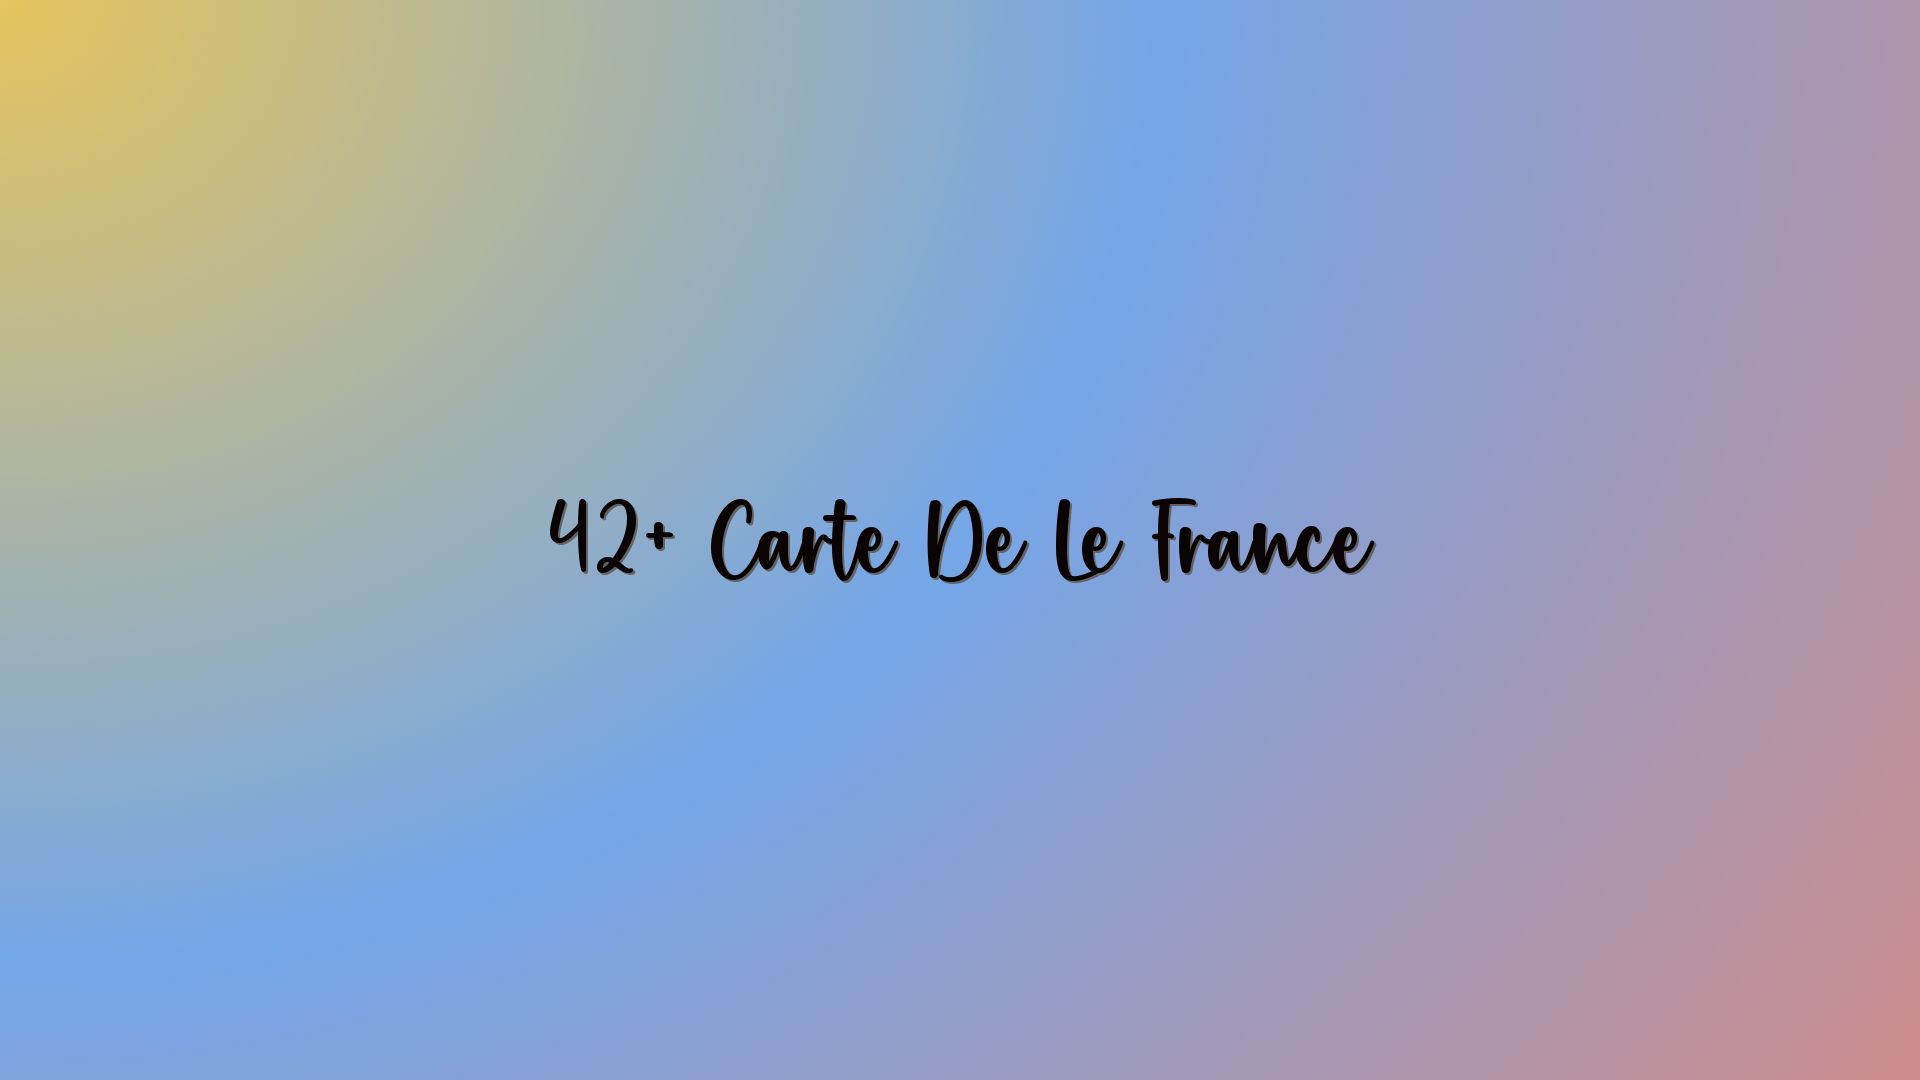 42+ Carte De Le France